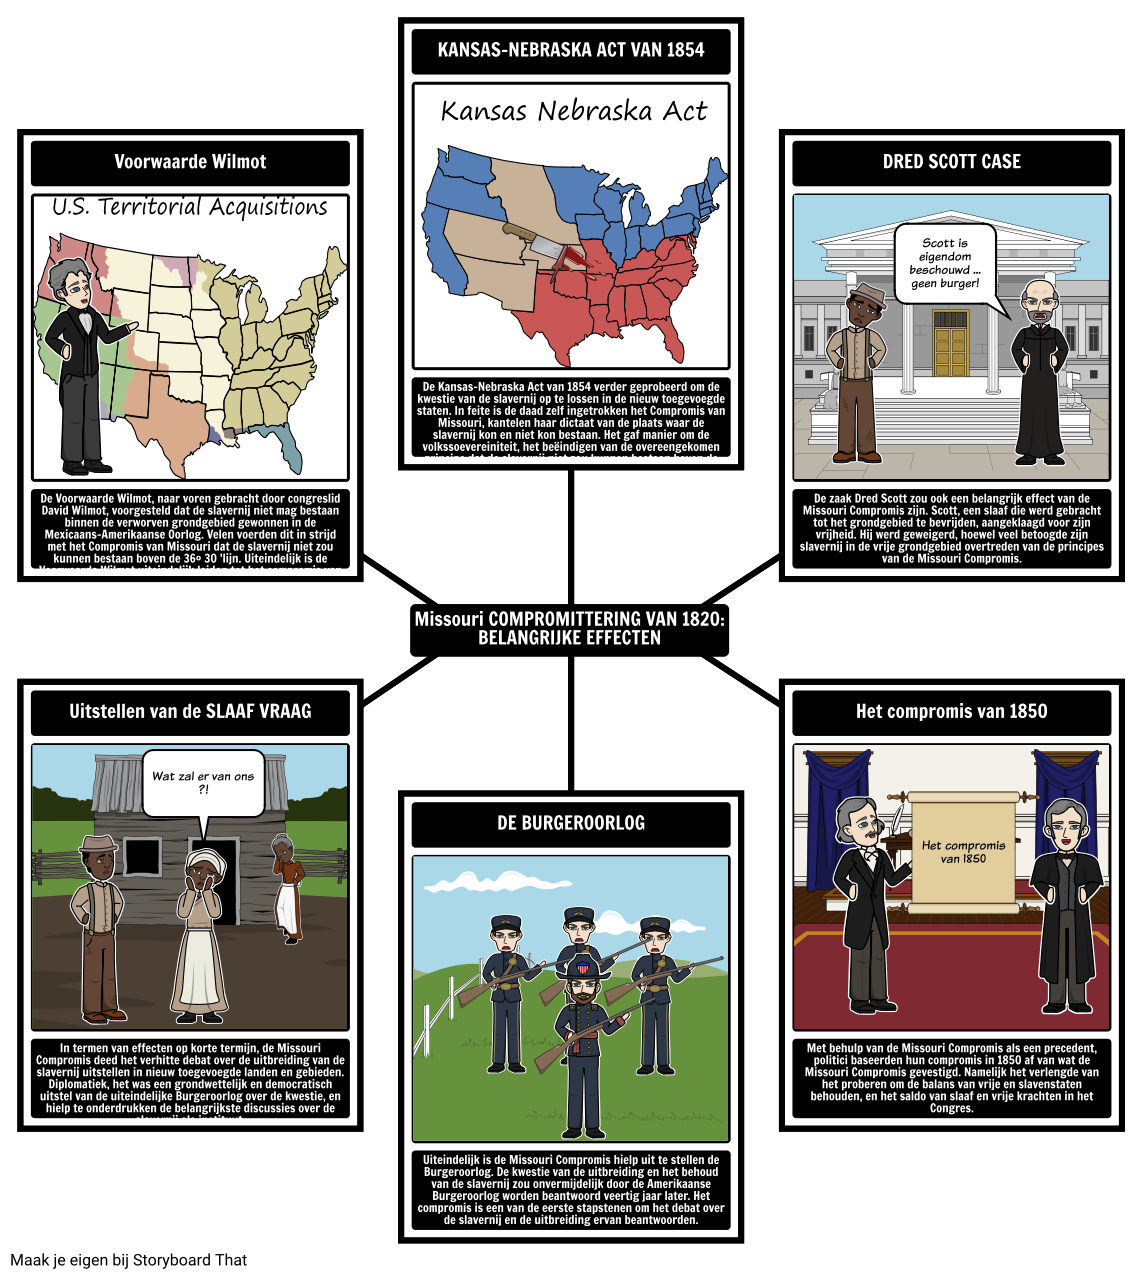 De Missouri Compromis van 1820 - Major Effects